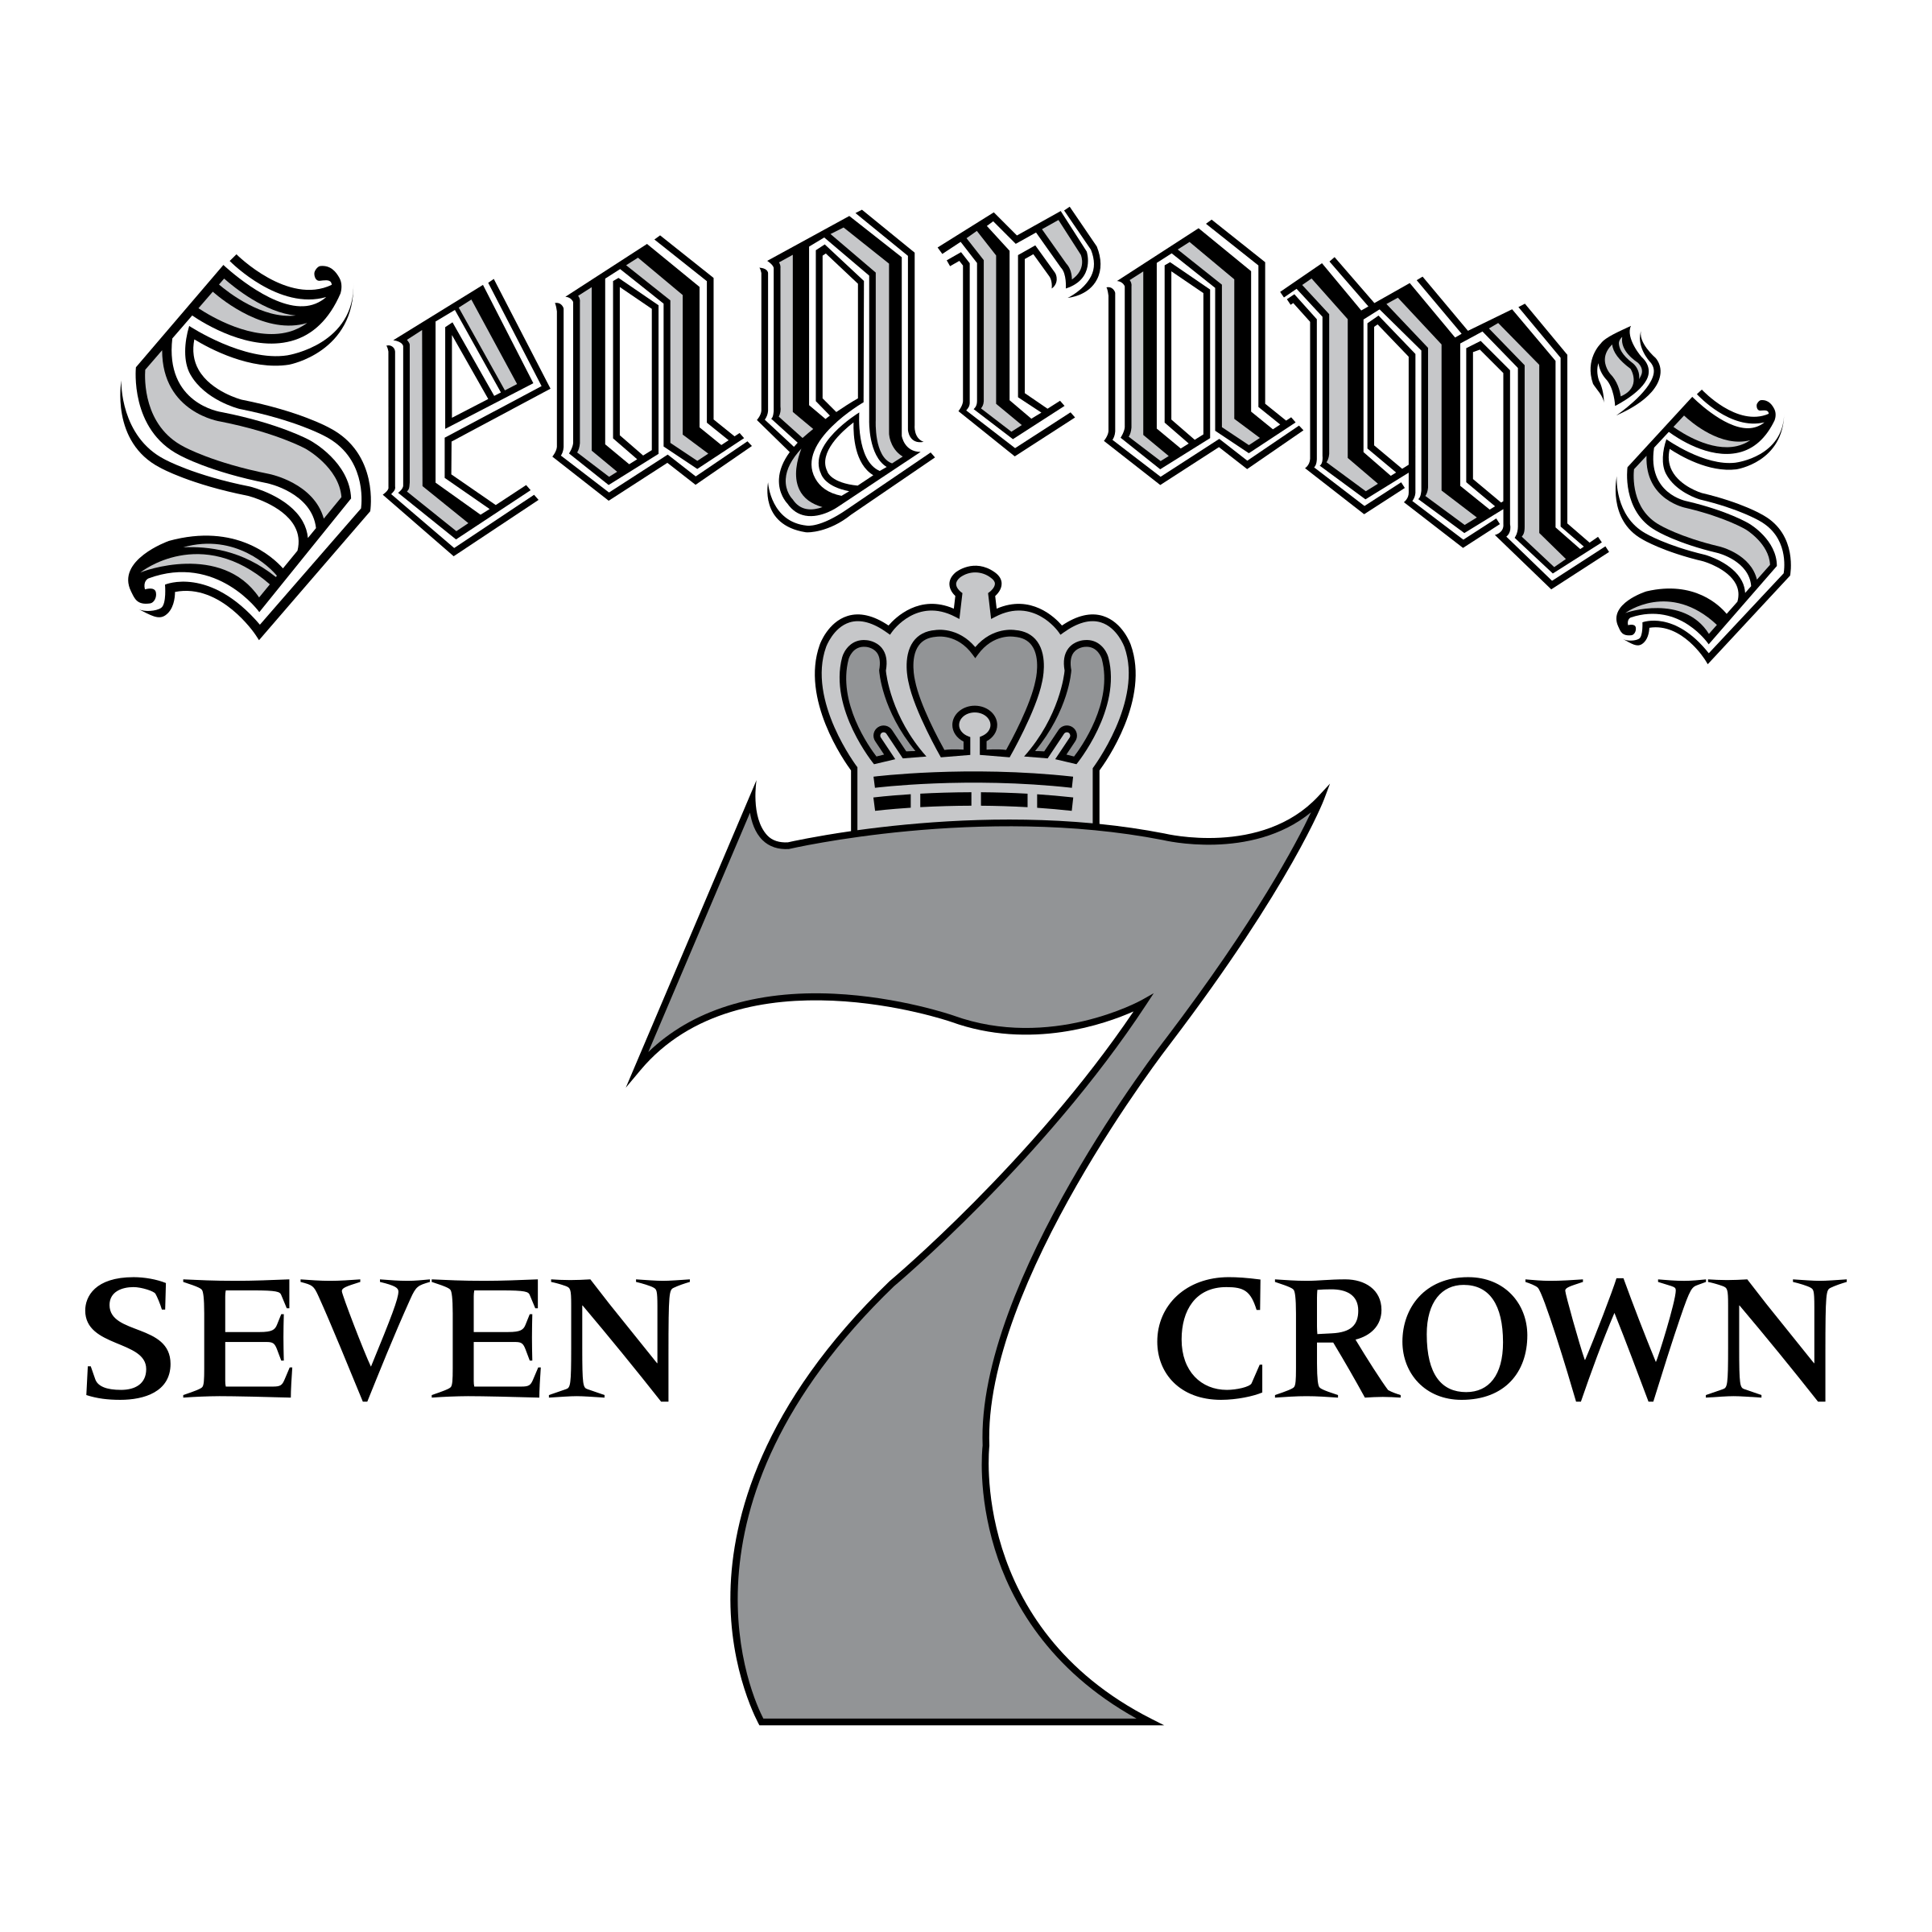 Seagram's Logo - Seagram's Seven Crown Logo PNG Transparent & SVG Vector